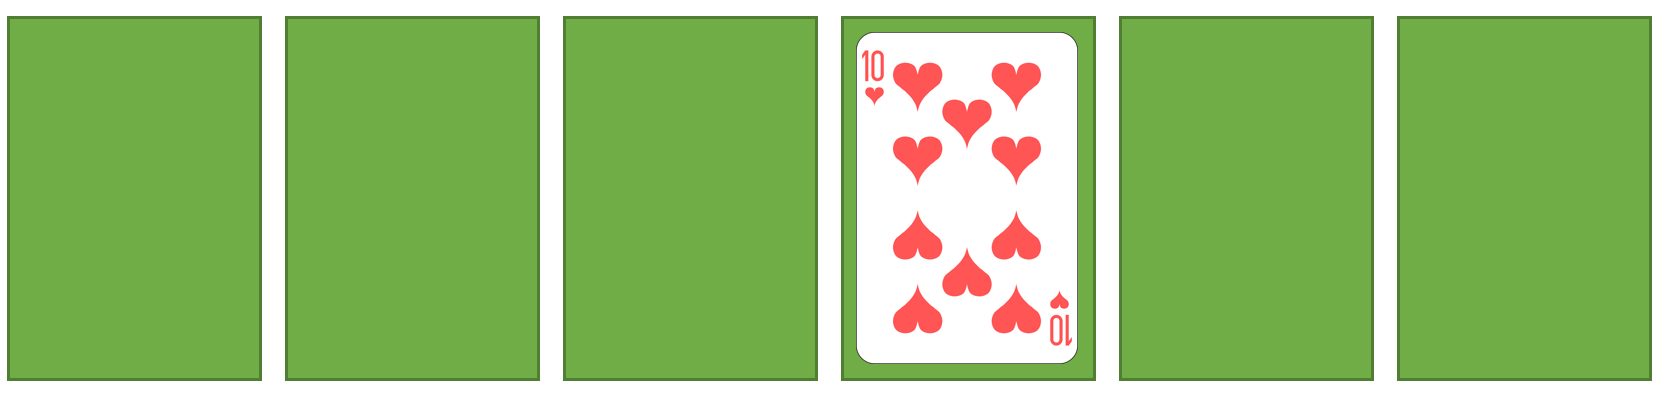 spielkarten-sort4-1